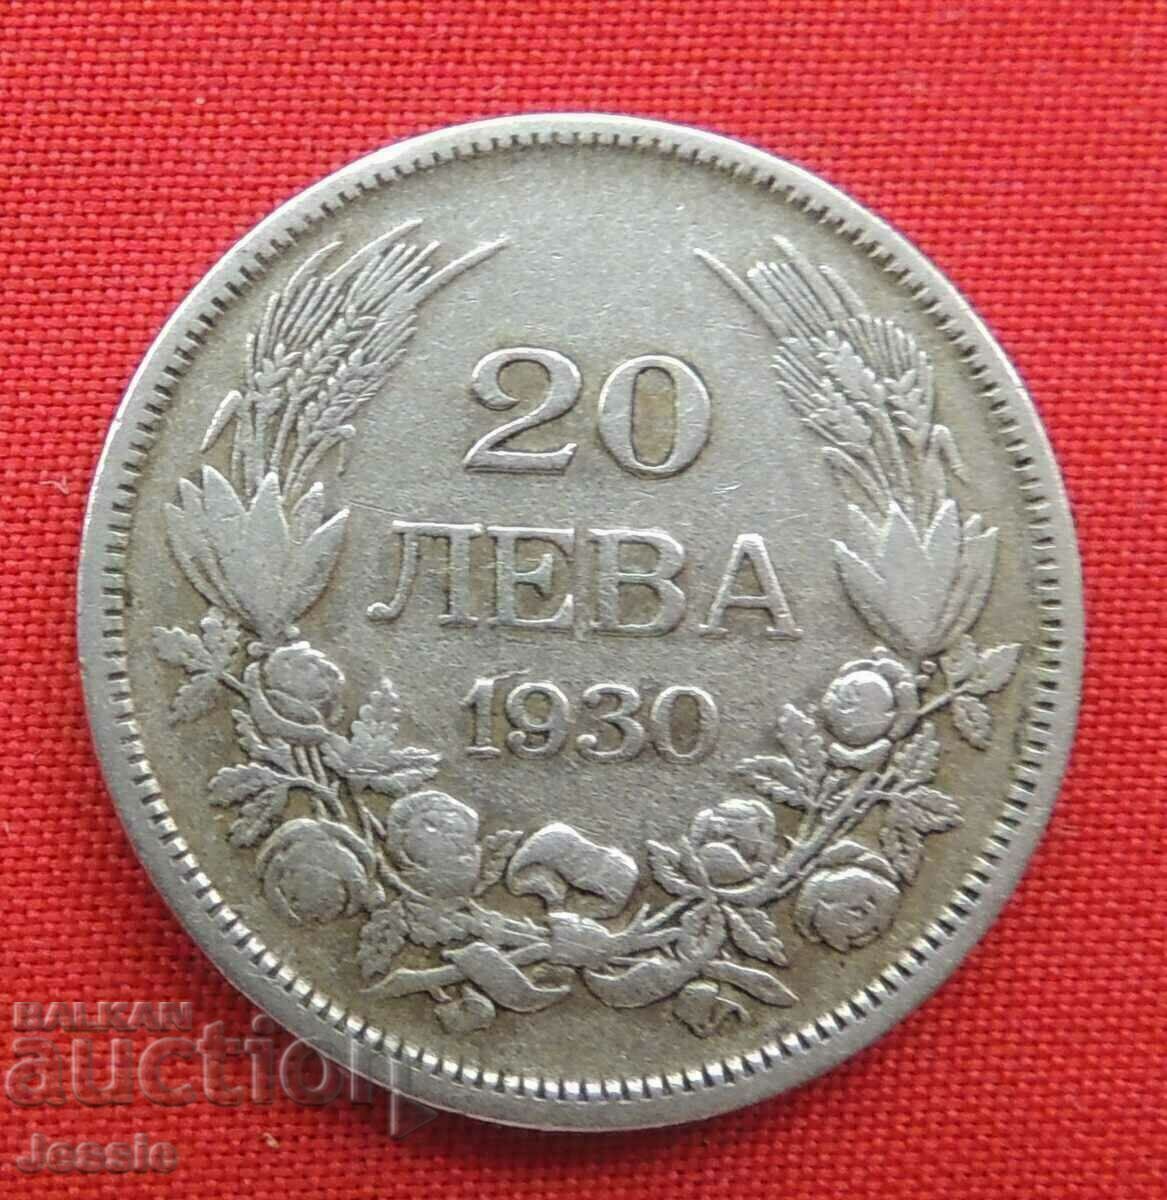 20 BGN 1930 silver CURIOSITY